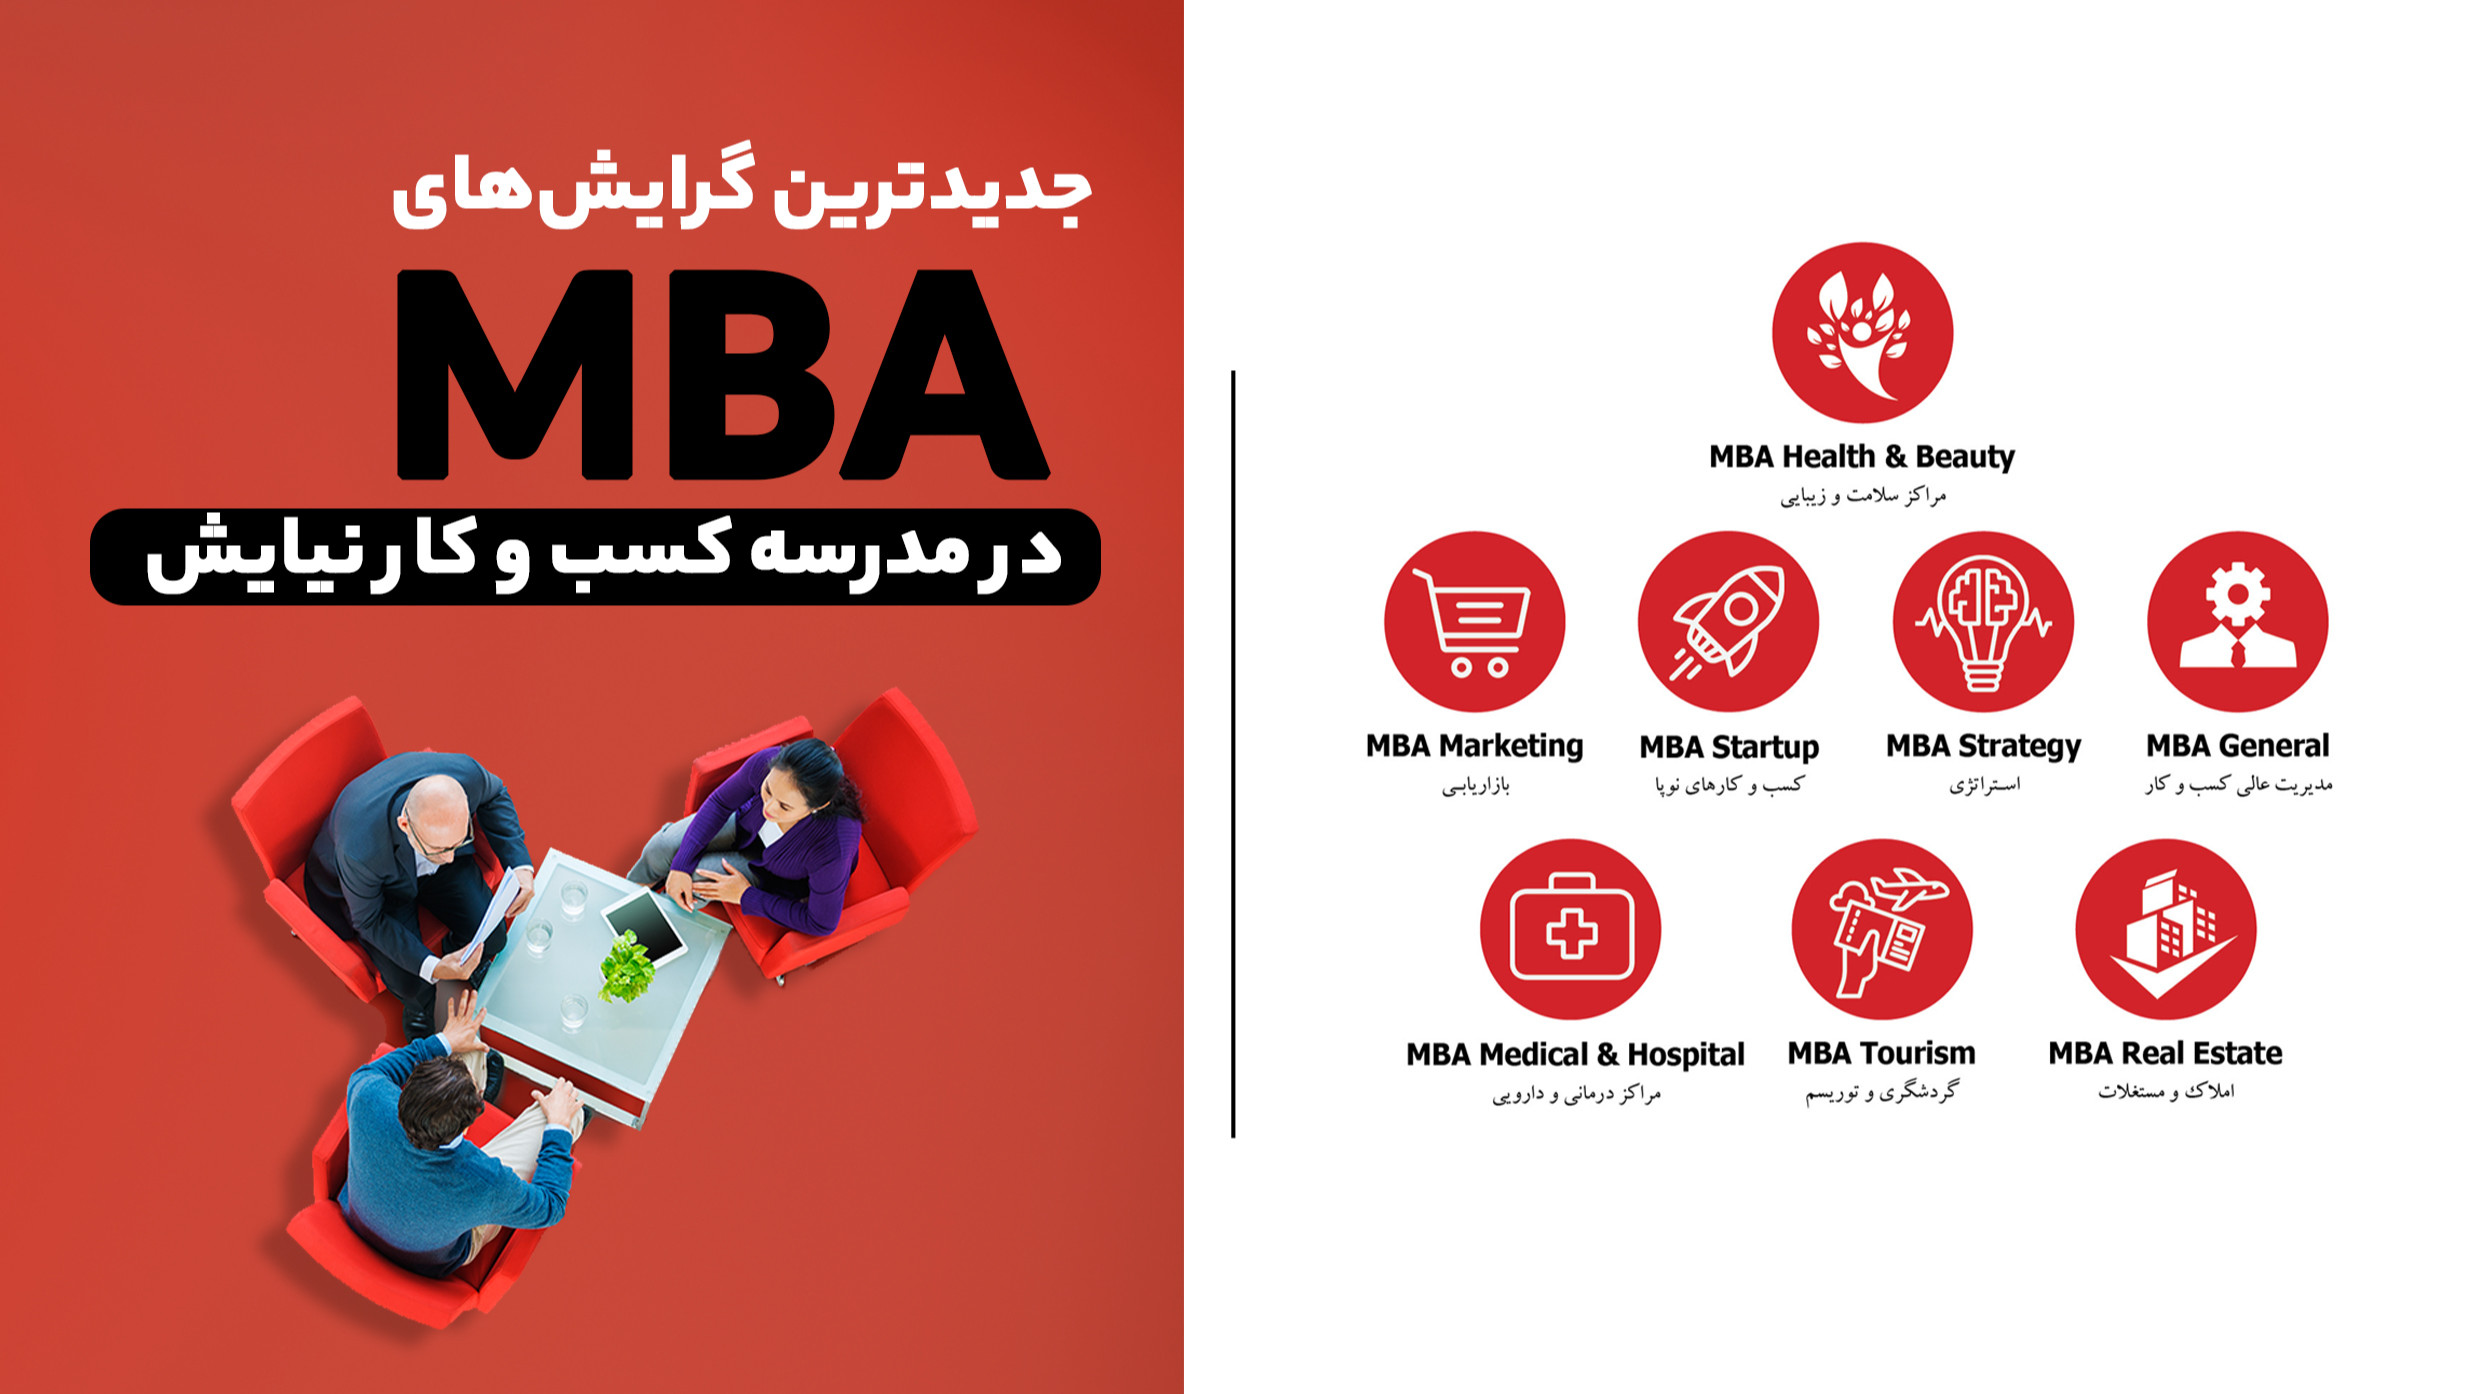 دوره MBA با گرایش های جدید در شیراز